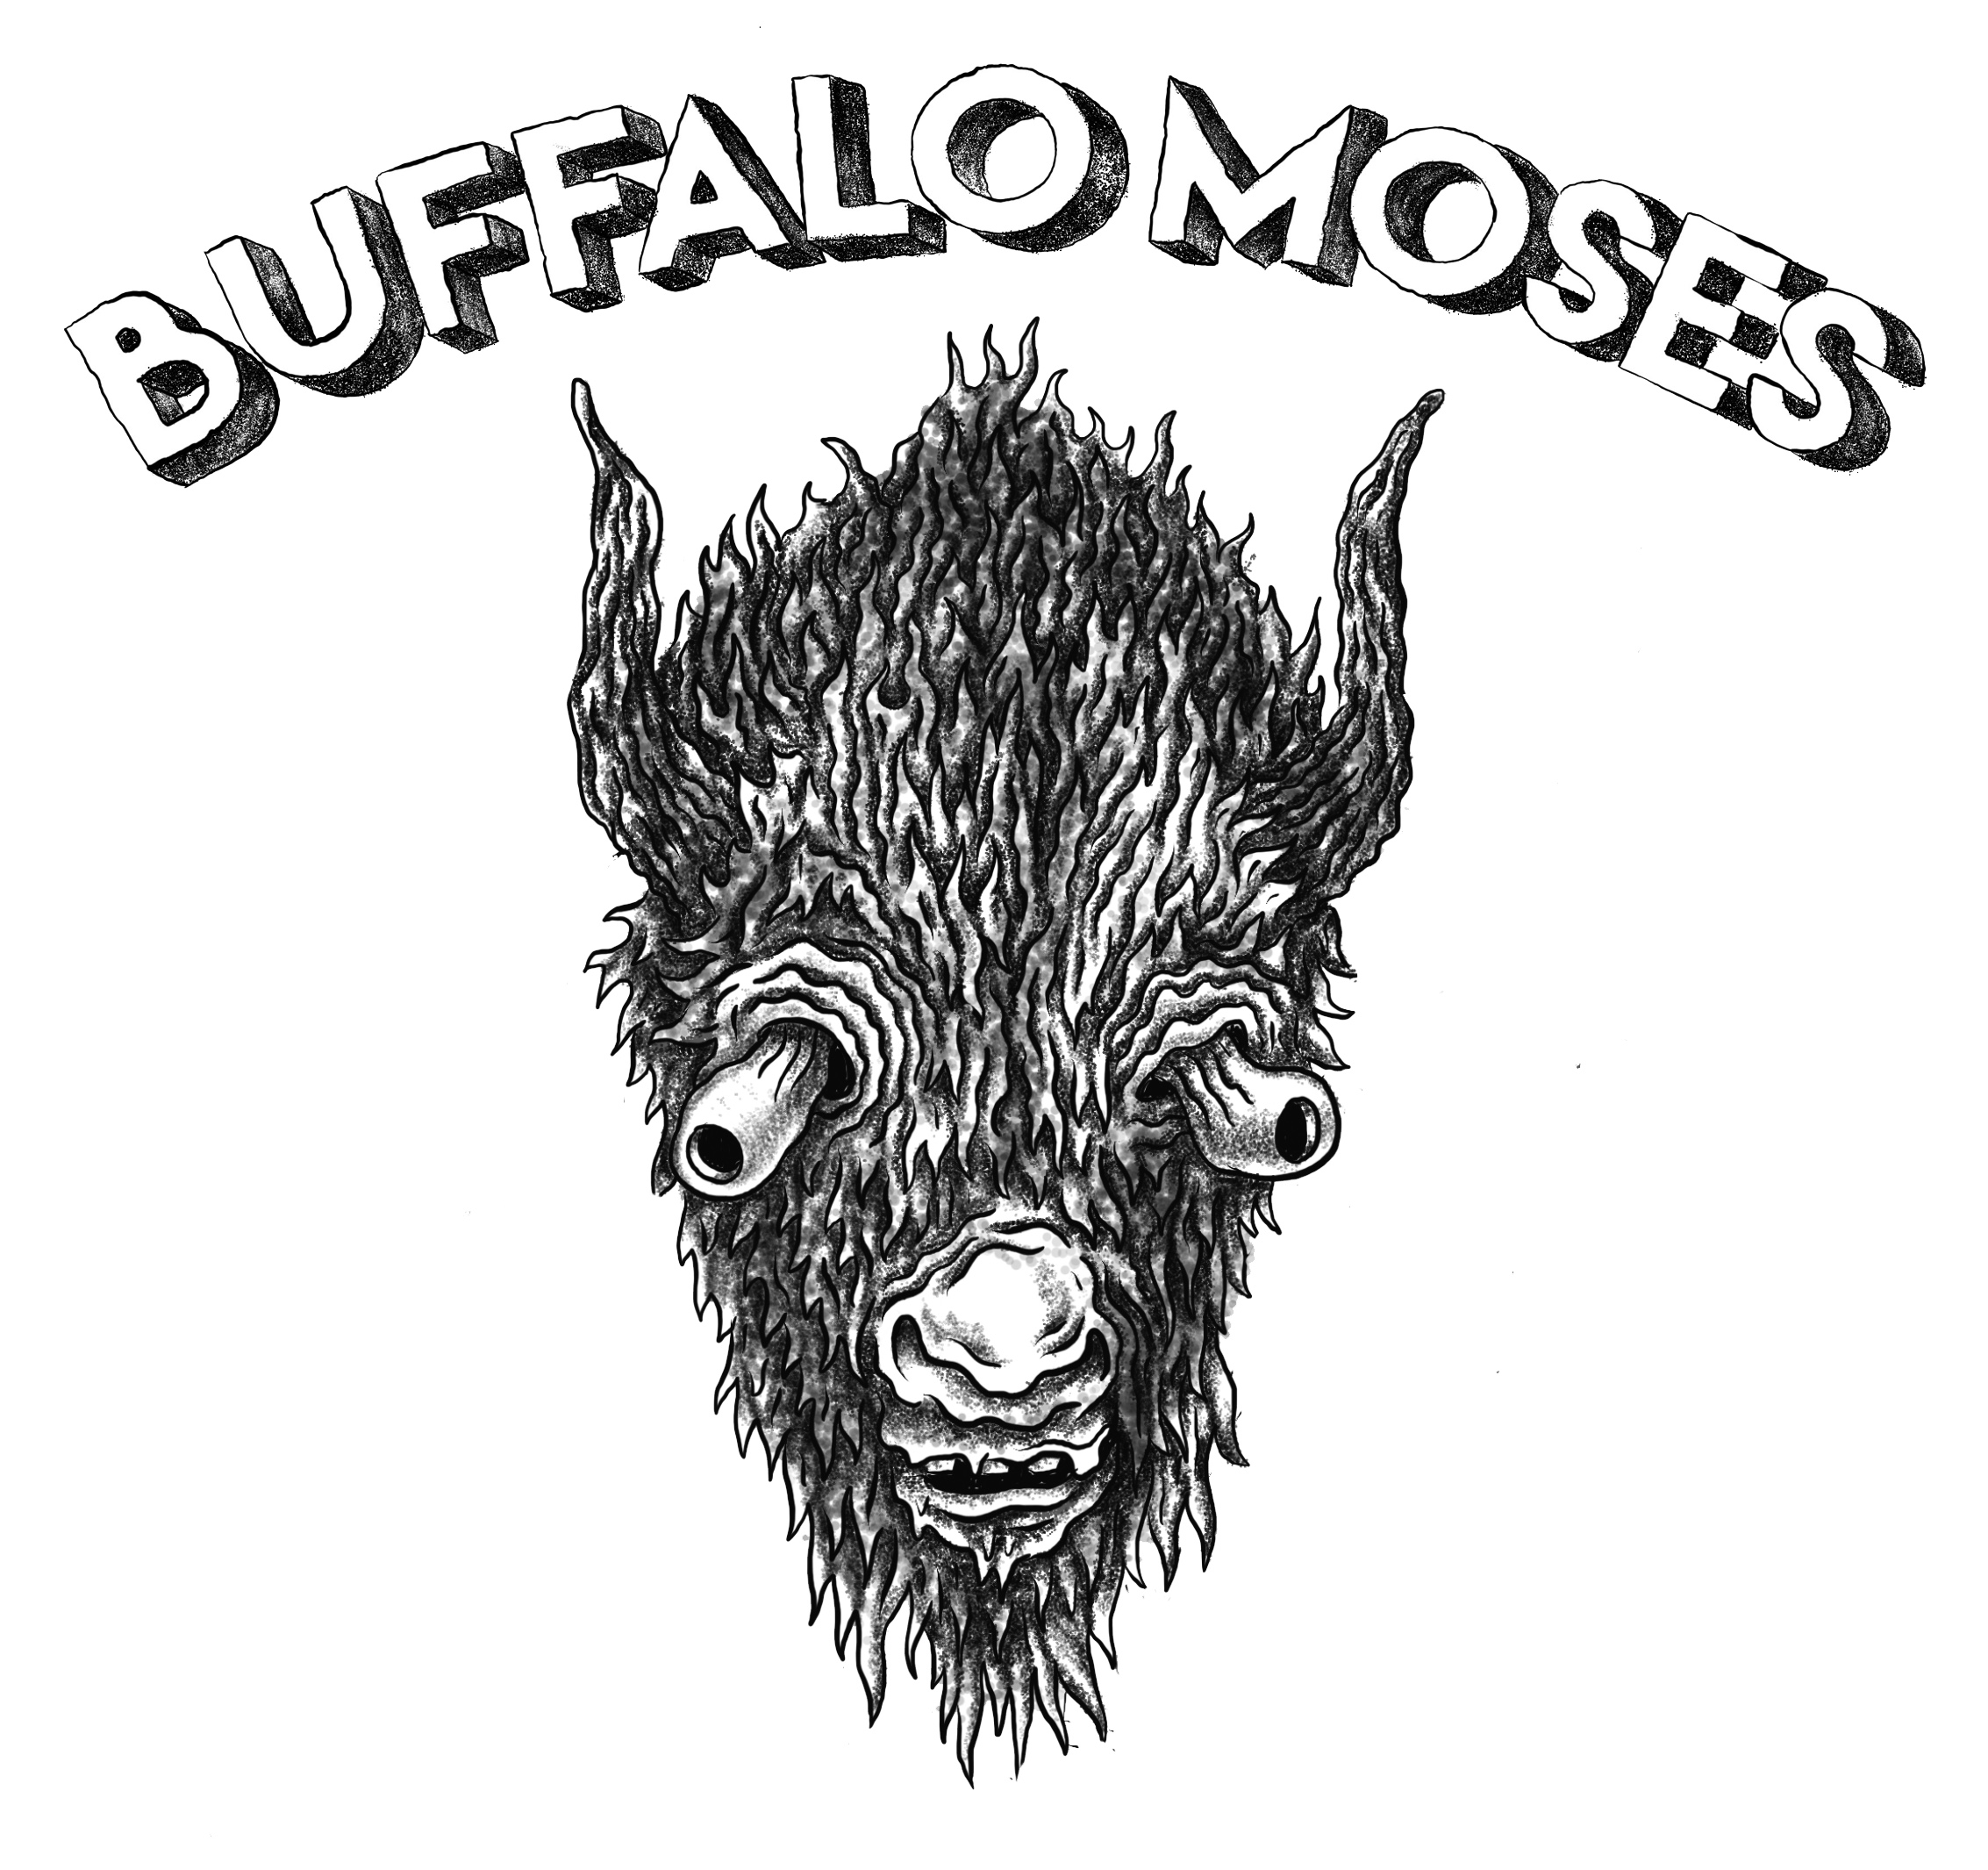 Buffalo Moses